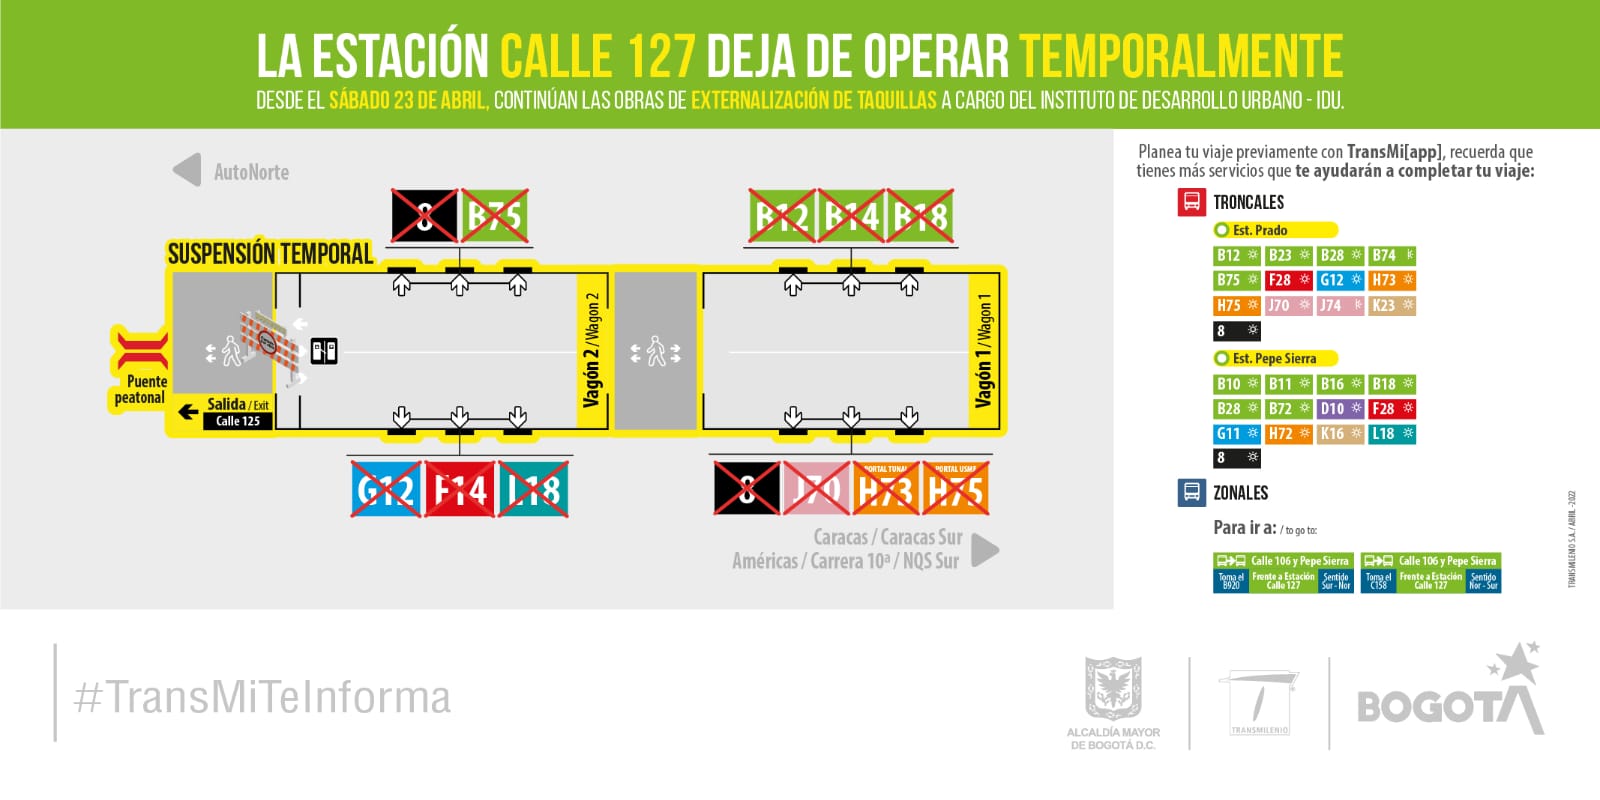 Estación de TranMilenio de la Calle 127 deja de operar temporalmente